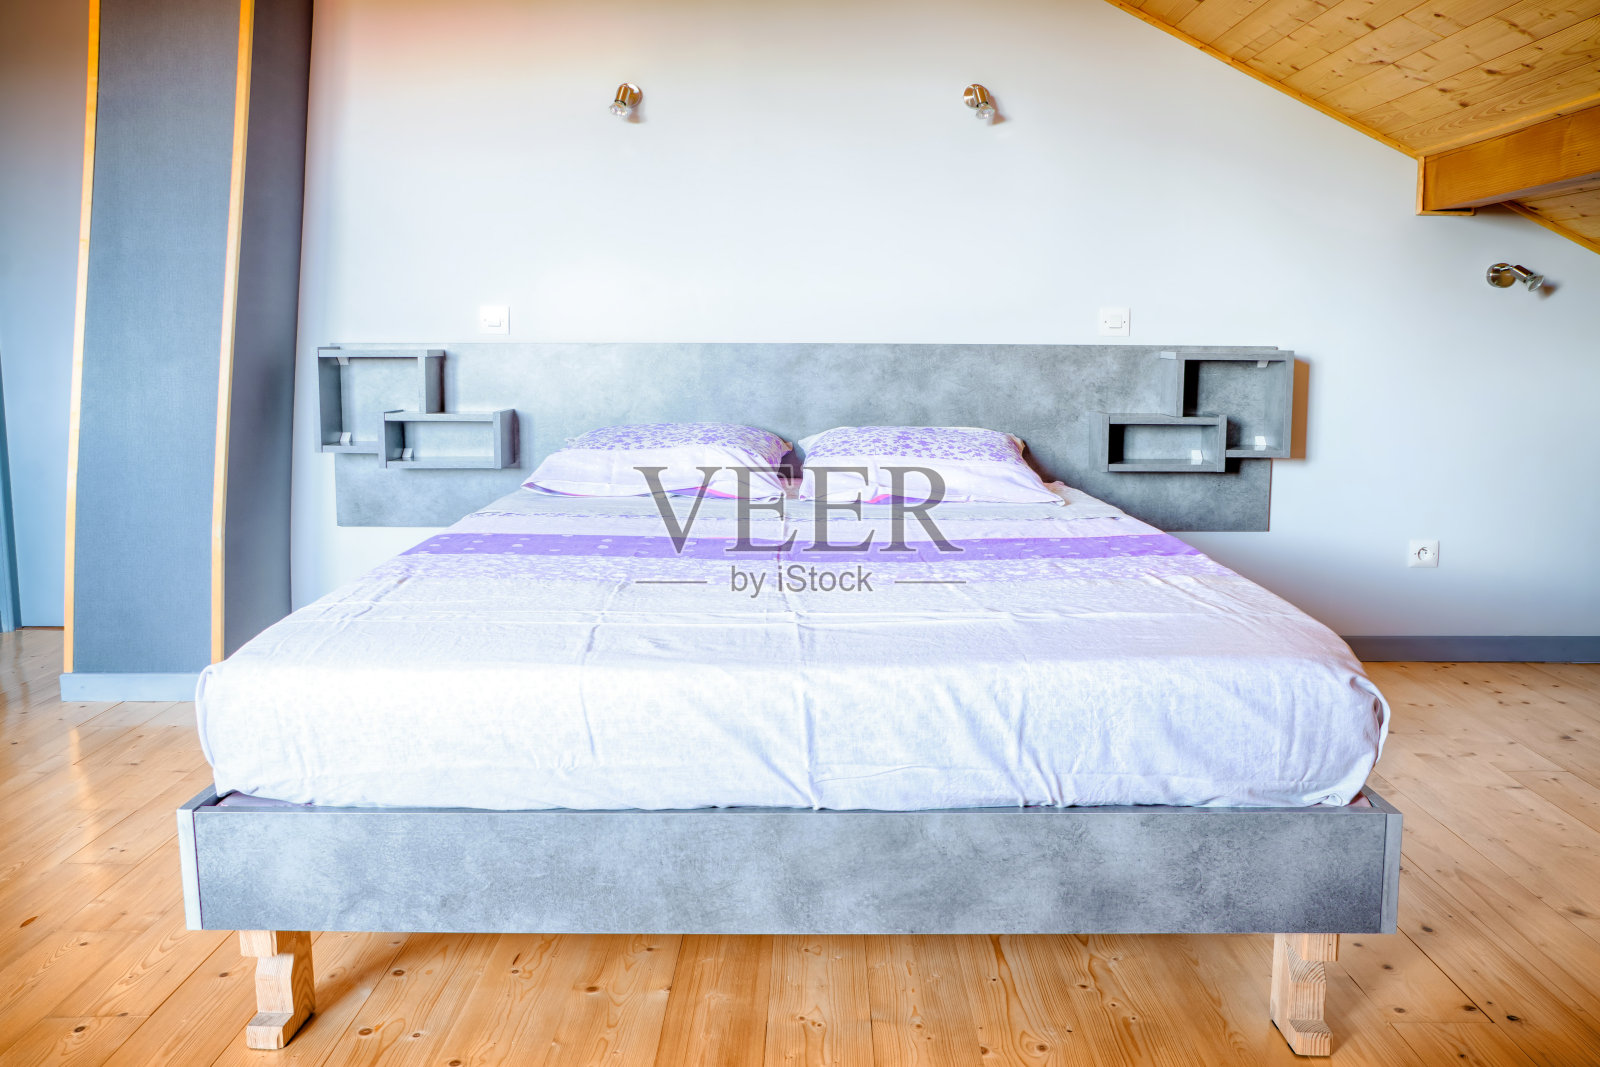 简单的自制床基础室内景观与两个人床垫和复古亮紫色床单纺织在一个大的稀疏房间楼上拼花木地板照片摄影图片